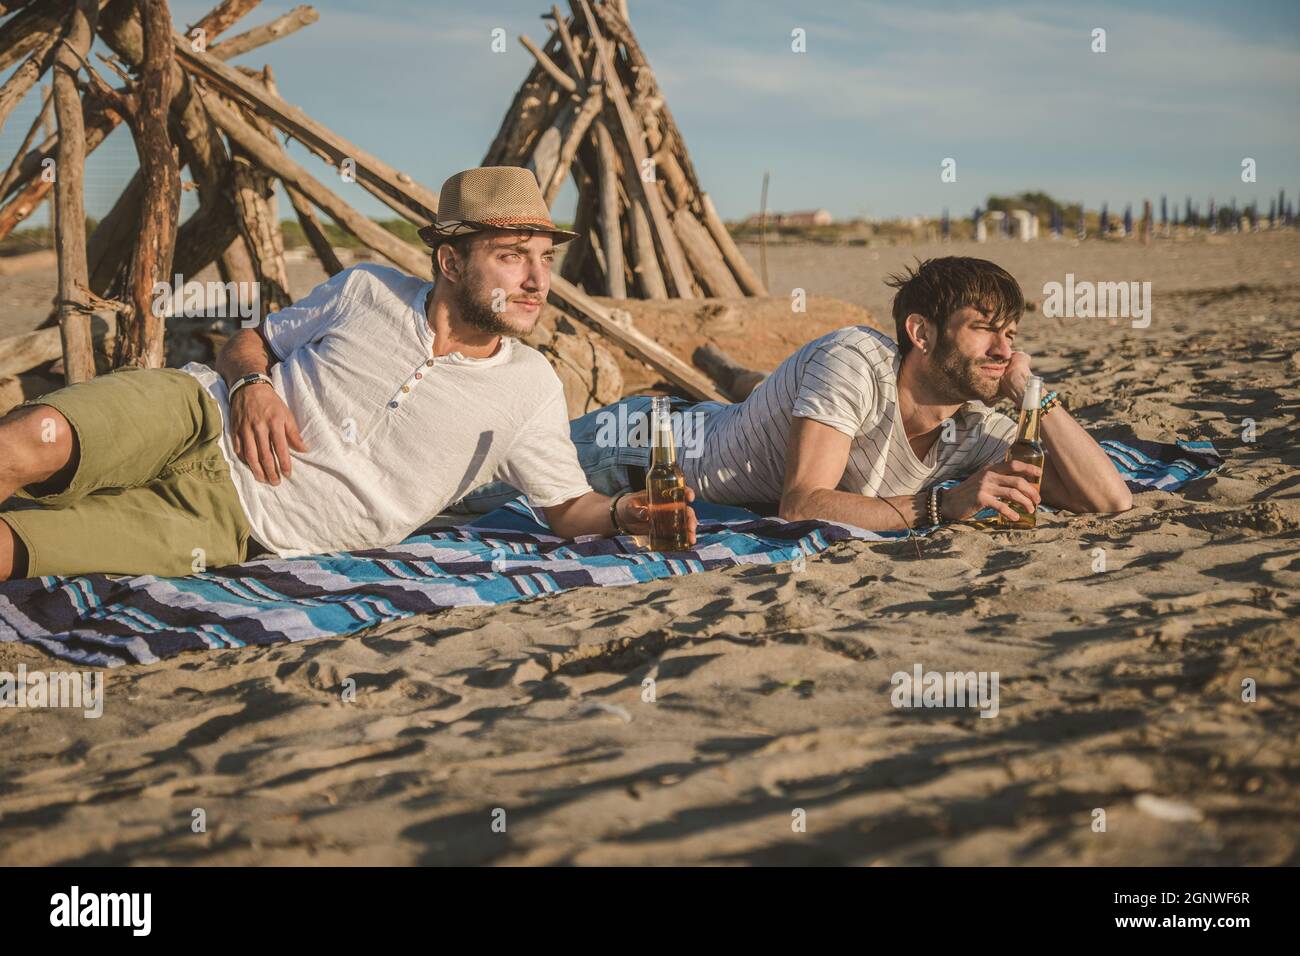 Due giovani amici trascorrono il tempo insieme seduti sulla spiaggia, bevendo birra e tostando in vacanza al tramonto estivo al crepuscolo. Concetto di amicizia Foto Stock